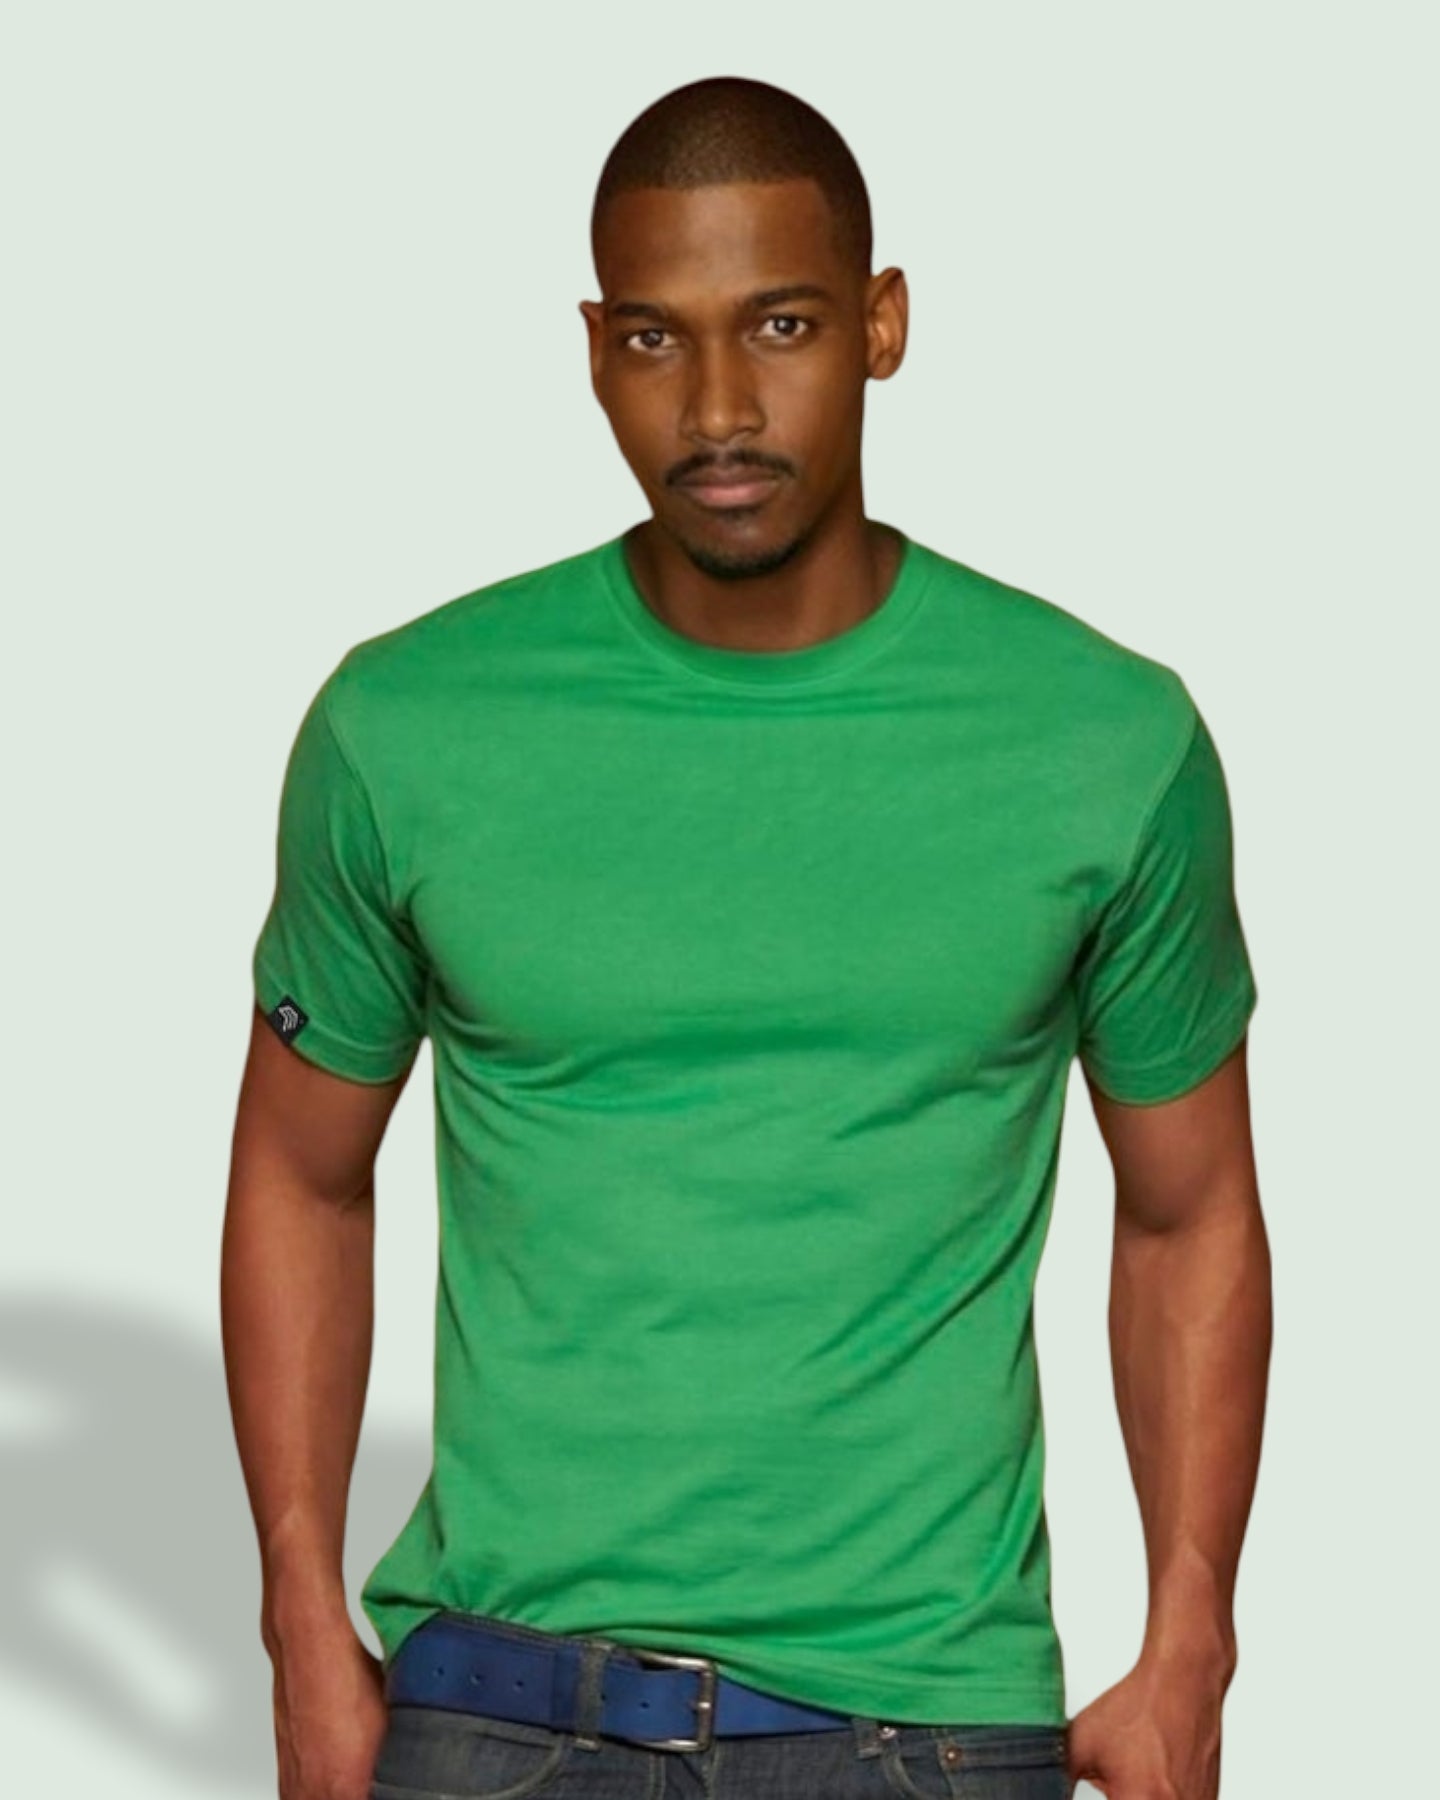 JAN 0002 ― Herren Heavy Komfort T-Shirt - Olive Grün